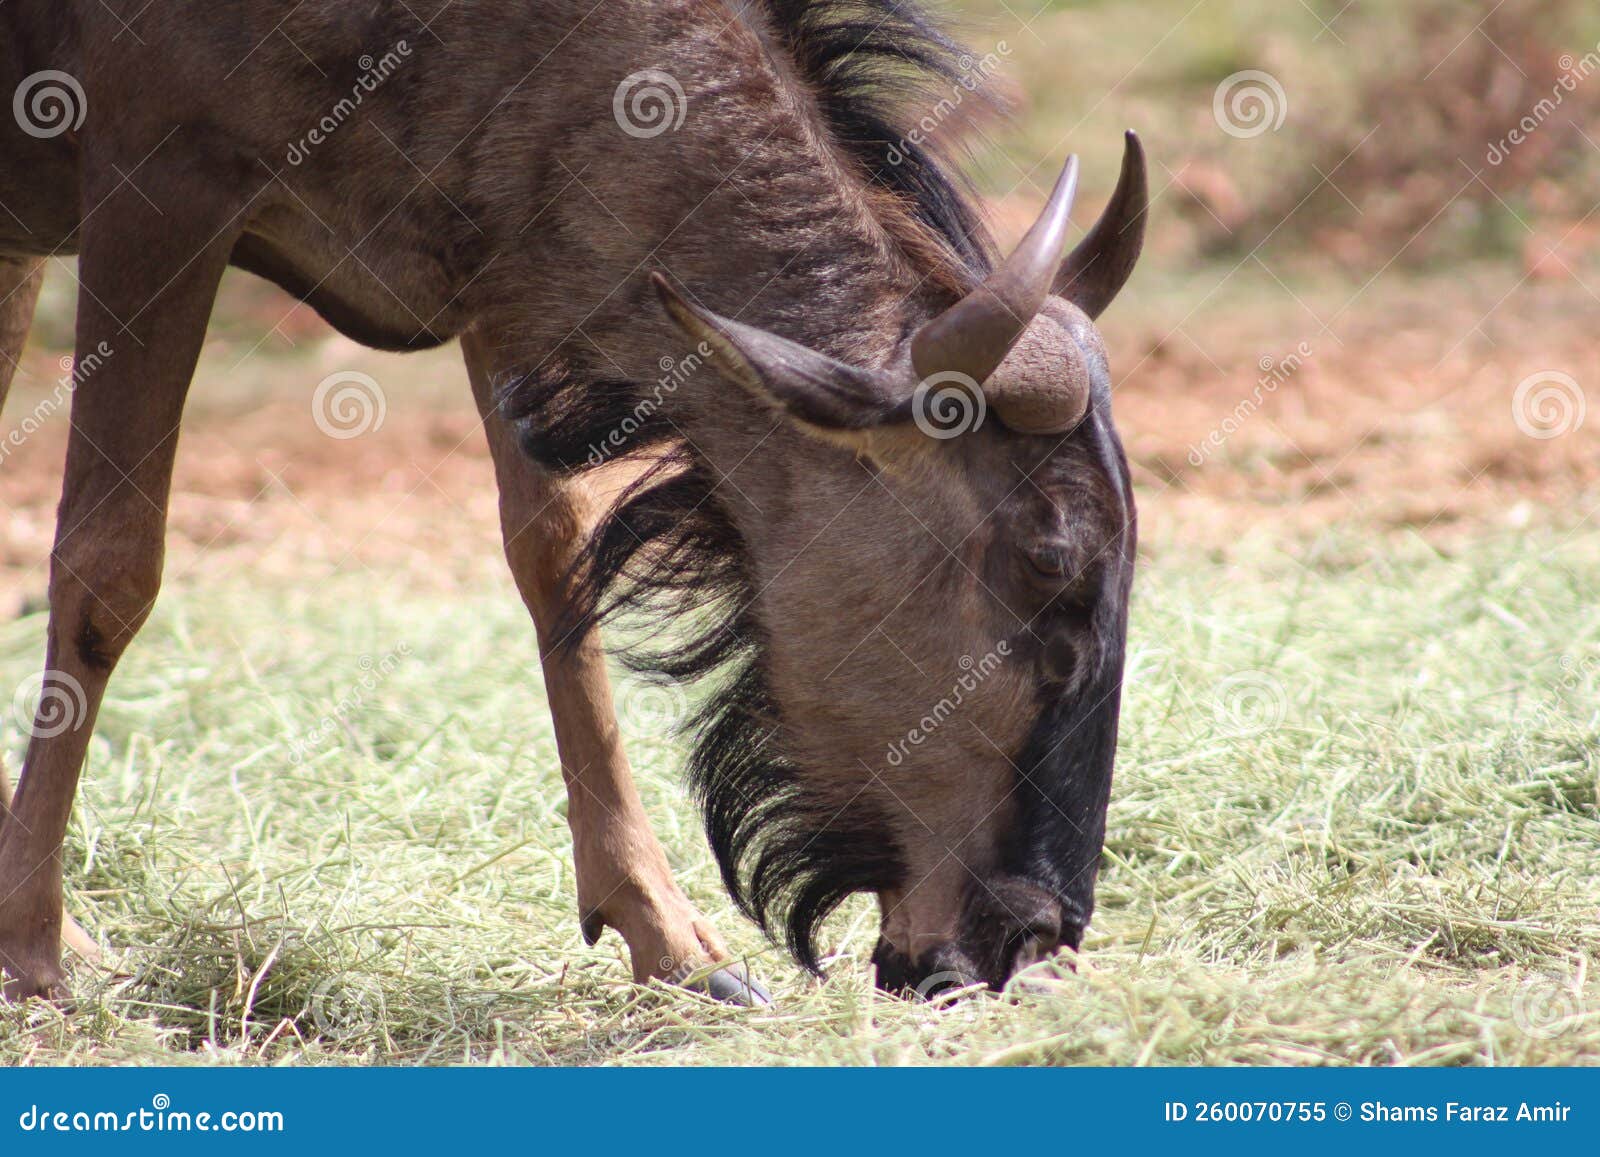 blue wildebeest in kruger national park